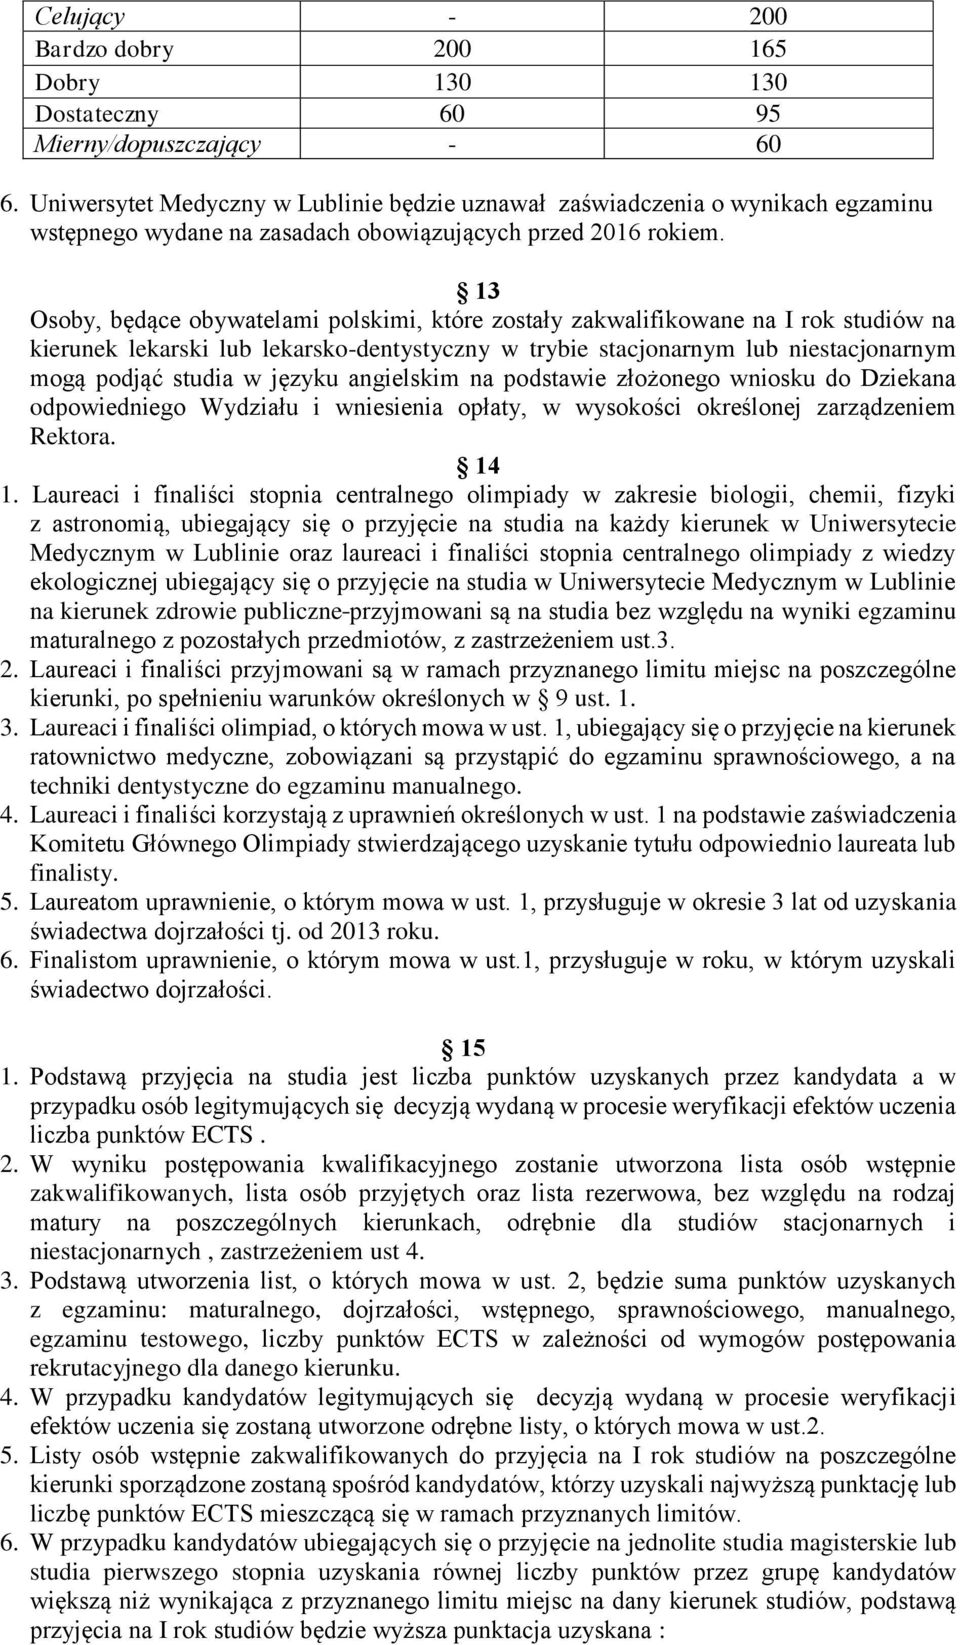 13 Osoby, będące obywatelami polskimi, które zostały zakwalifikowane na I rok studiów na kierunek lekarski lub lekarsko-dentystyczny w trybie stacjonarnym lub niestacjonarnym mogą podjąć studia w